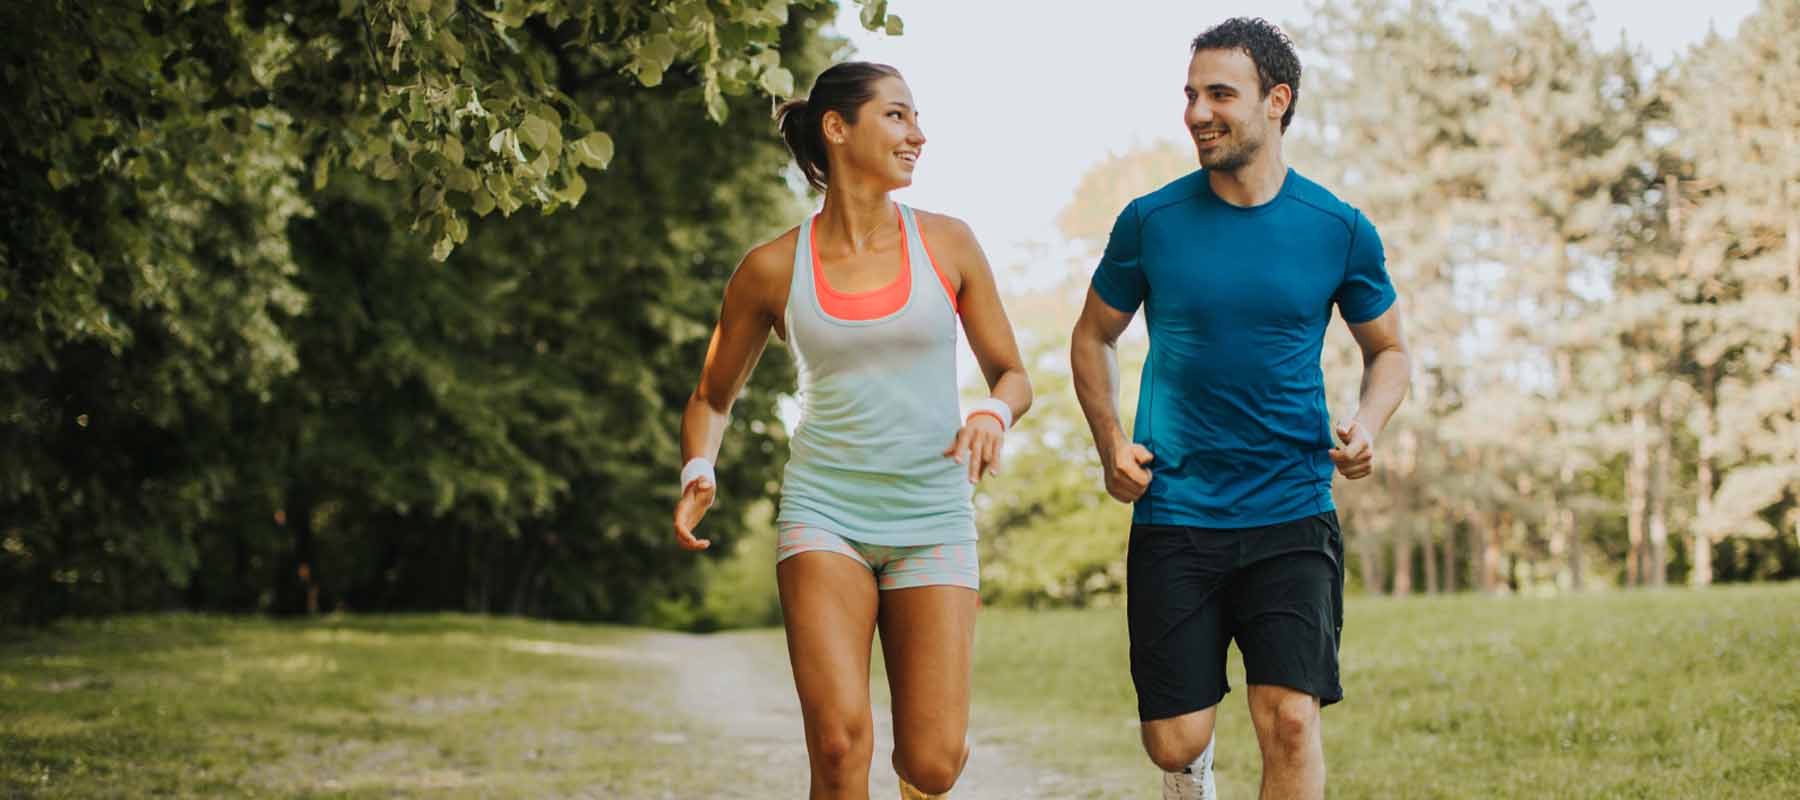 Løping: Effektivt, men tøft for kroppen! Kan CBD hjelpe?